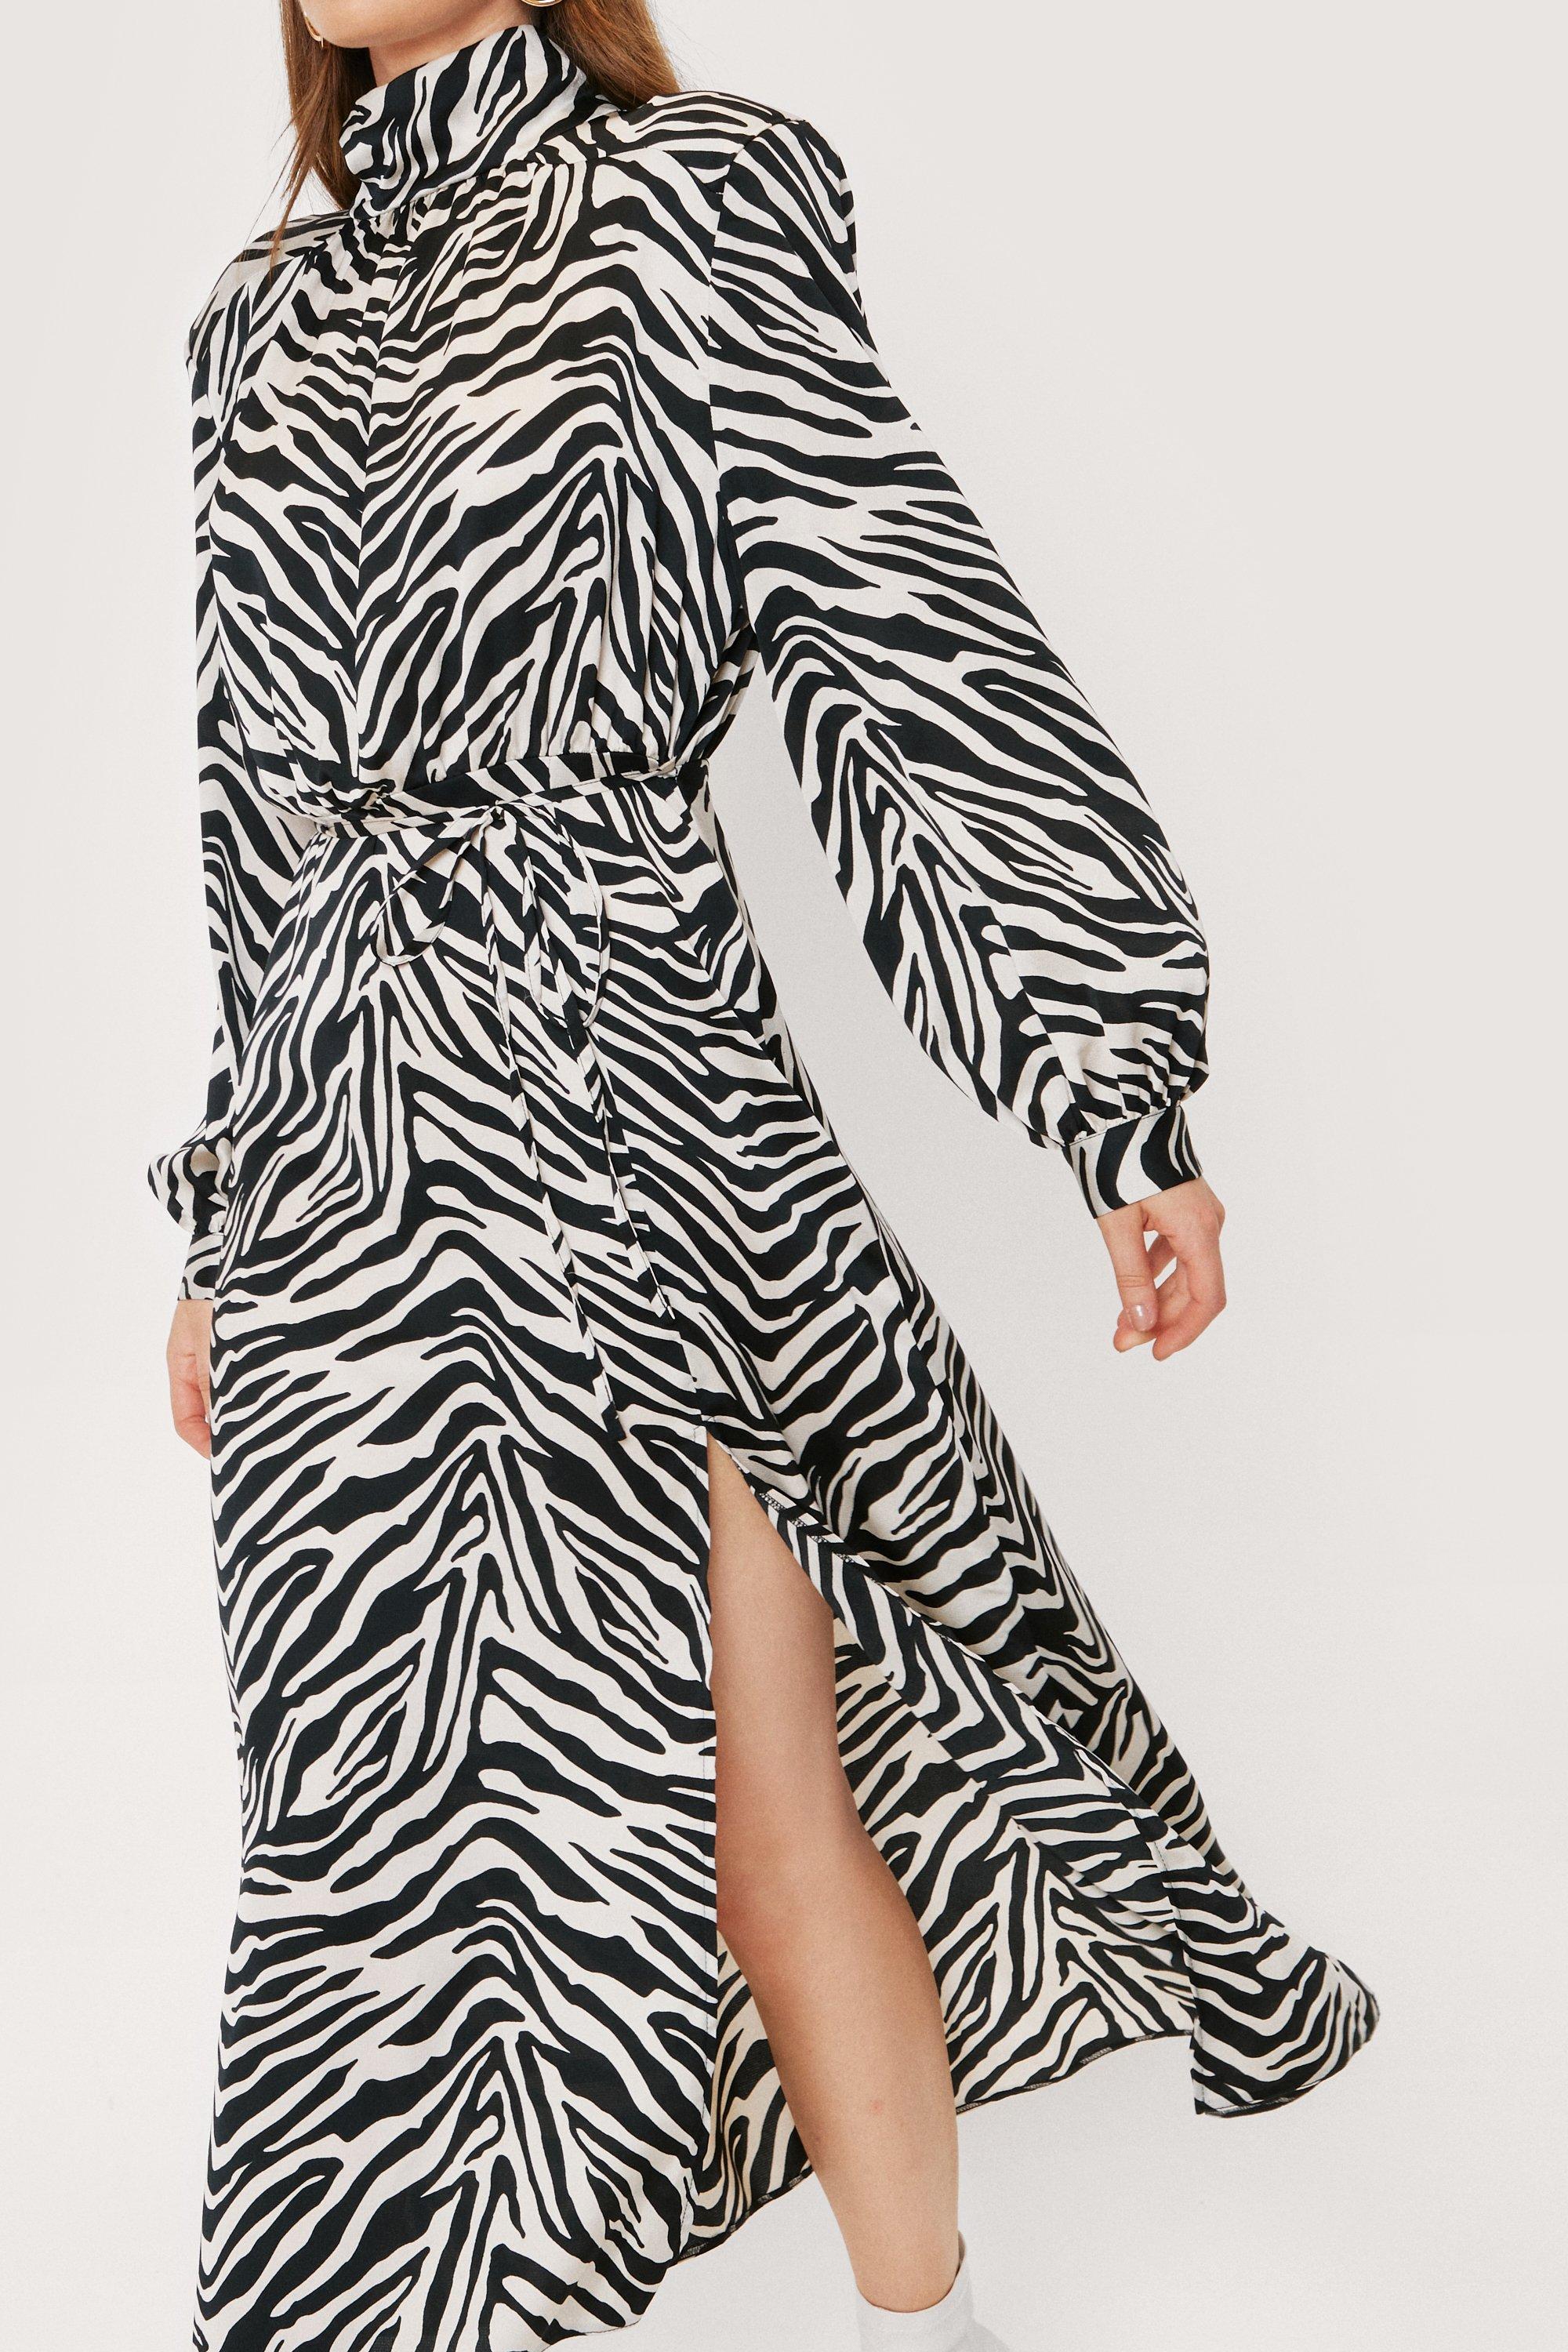 Zebra Print Satin High Neck Midi Dress ...